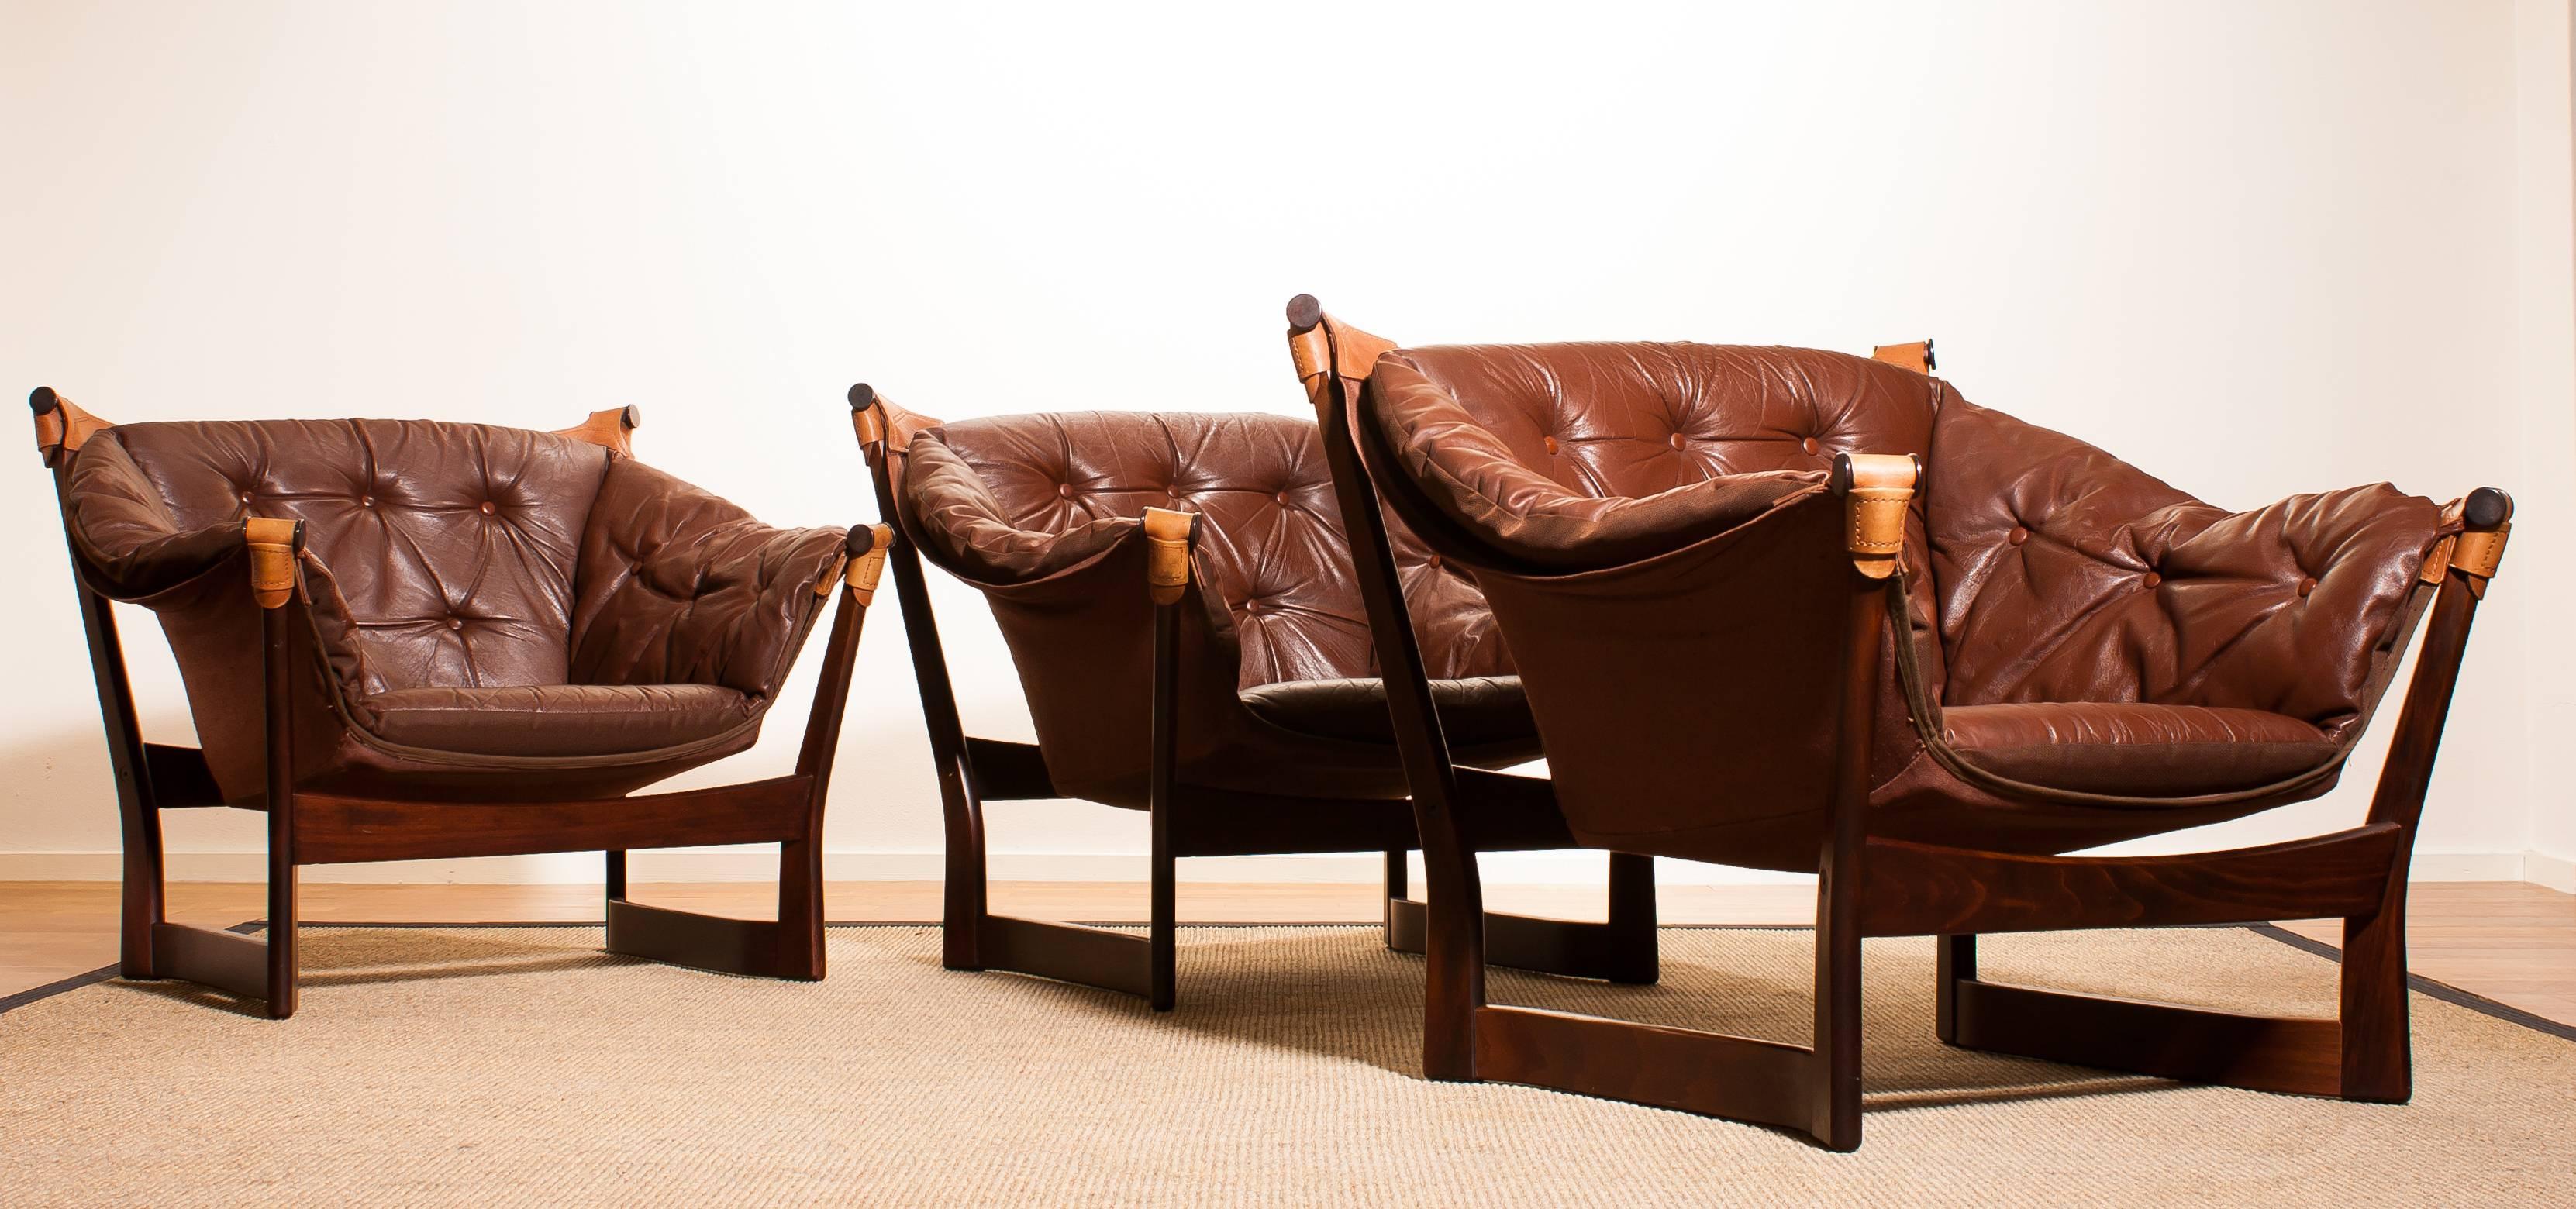 1950s, Teak and Leather Set 'Trega' Chairs by Tormod Alnaes for Sørliemøbler 1